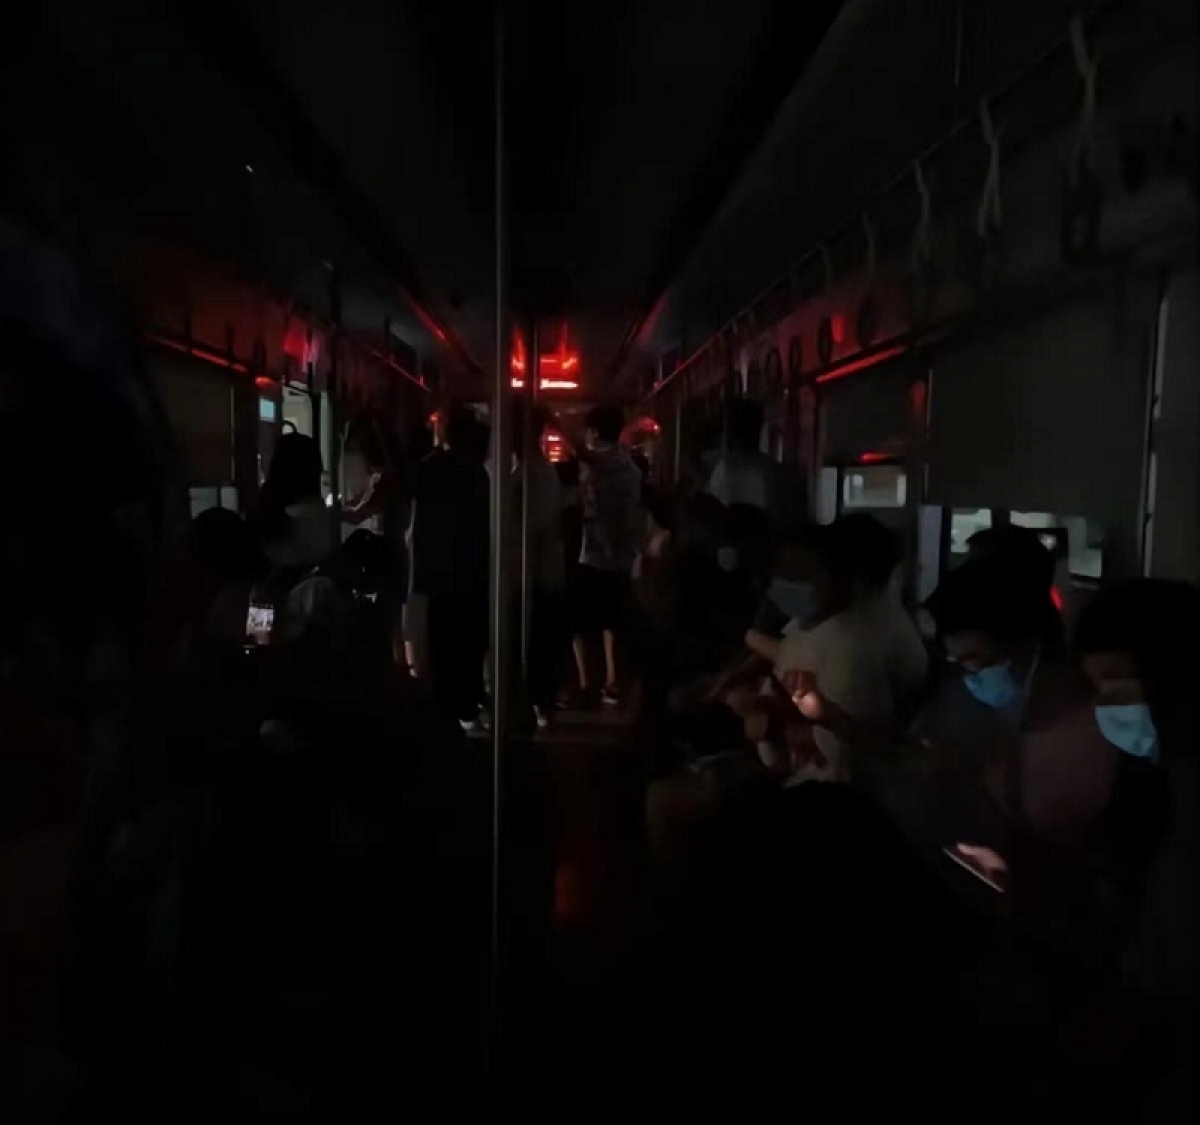 Tàu điện ngầm, đường phố Trung Quốc chìm trong bóng tối để tiết kiệm điện - Ảnh 3.